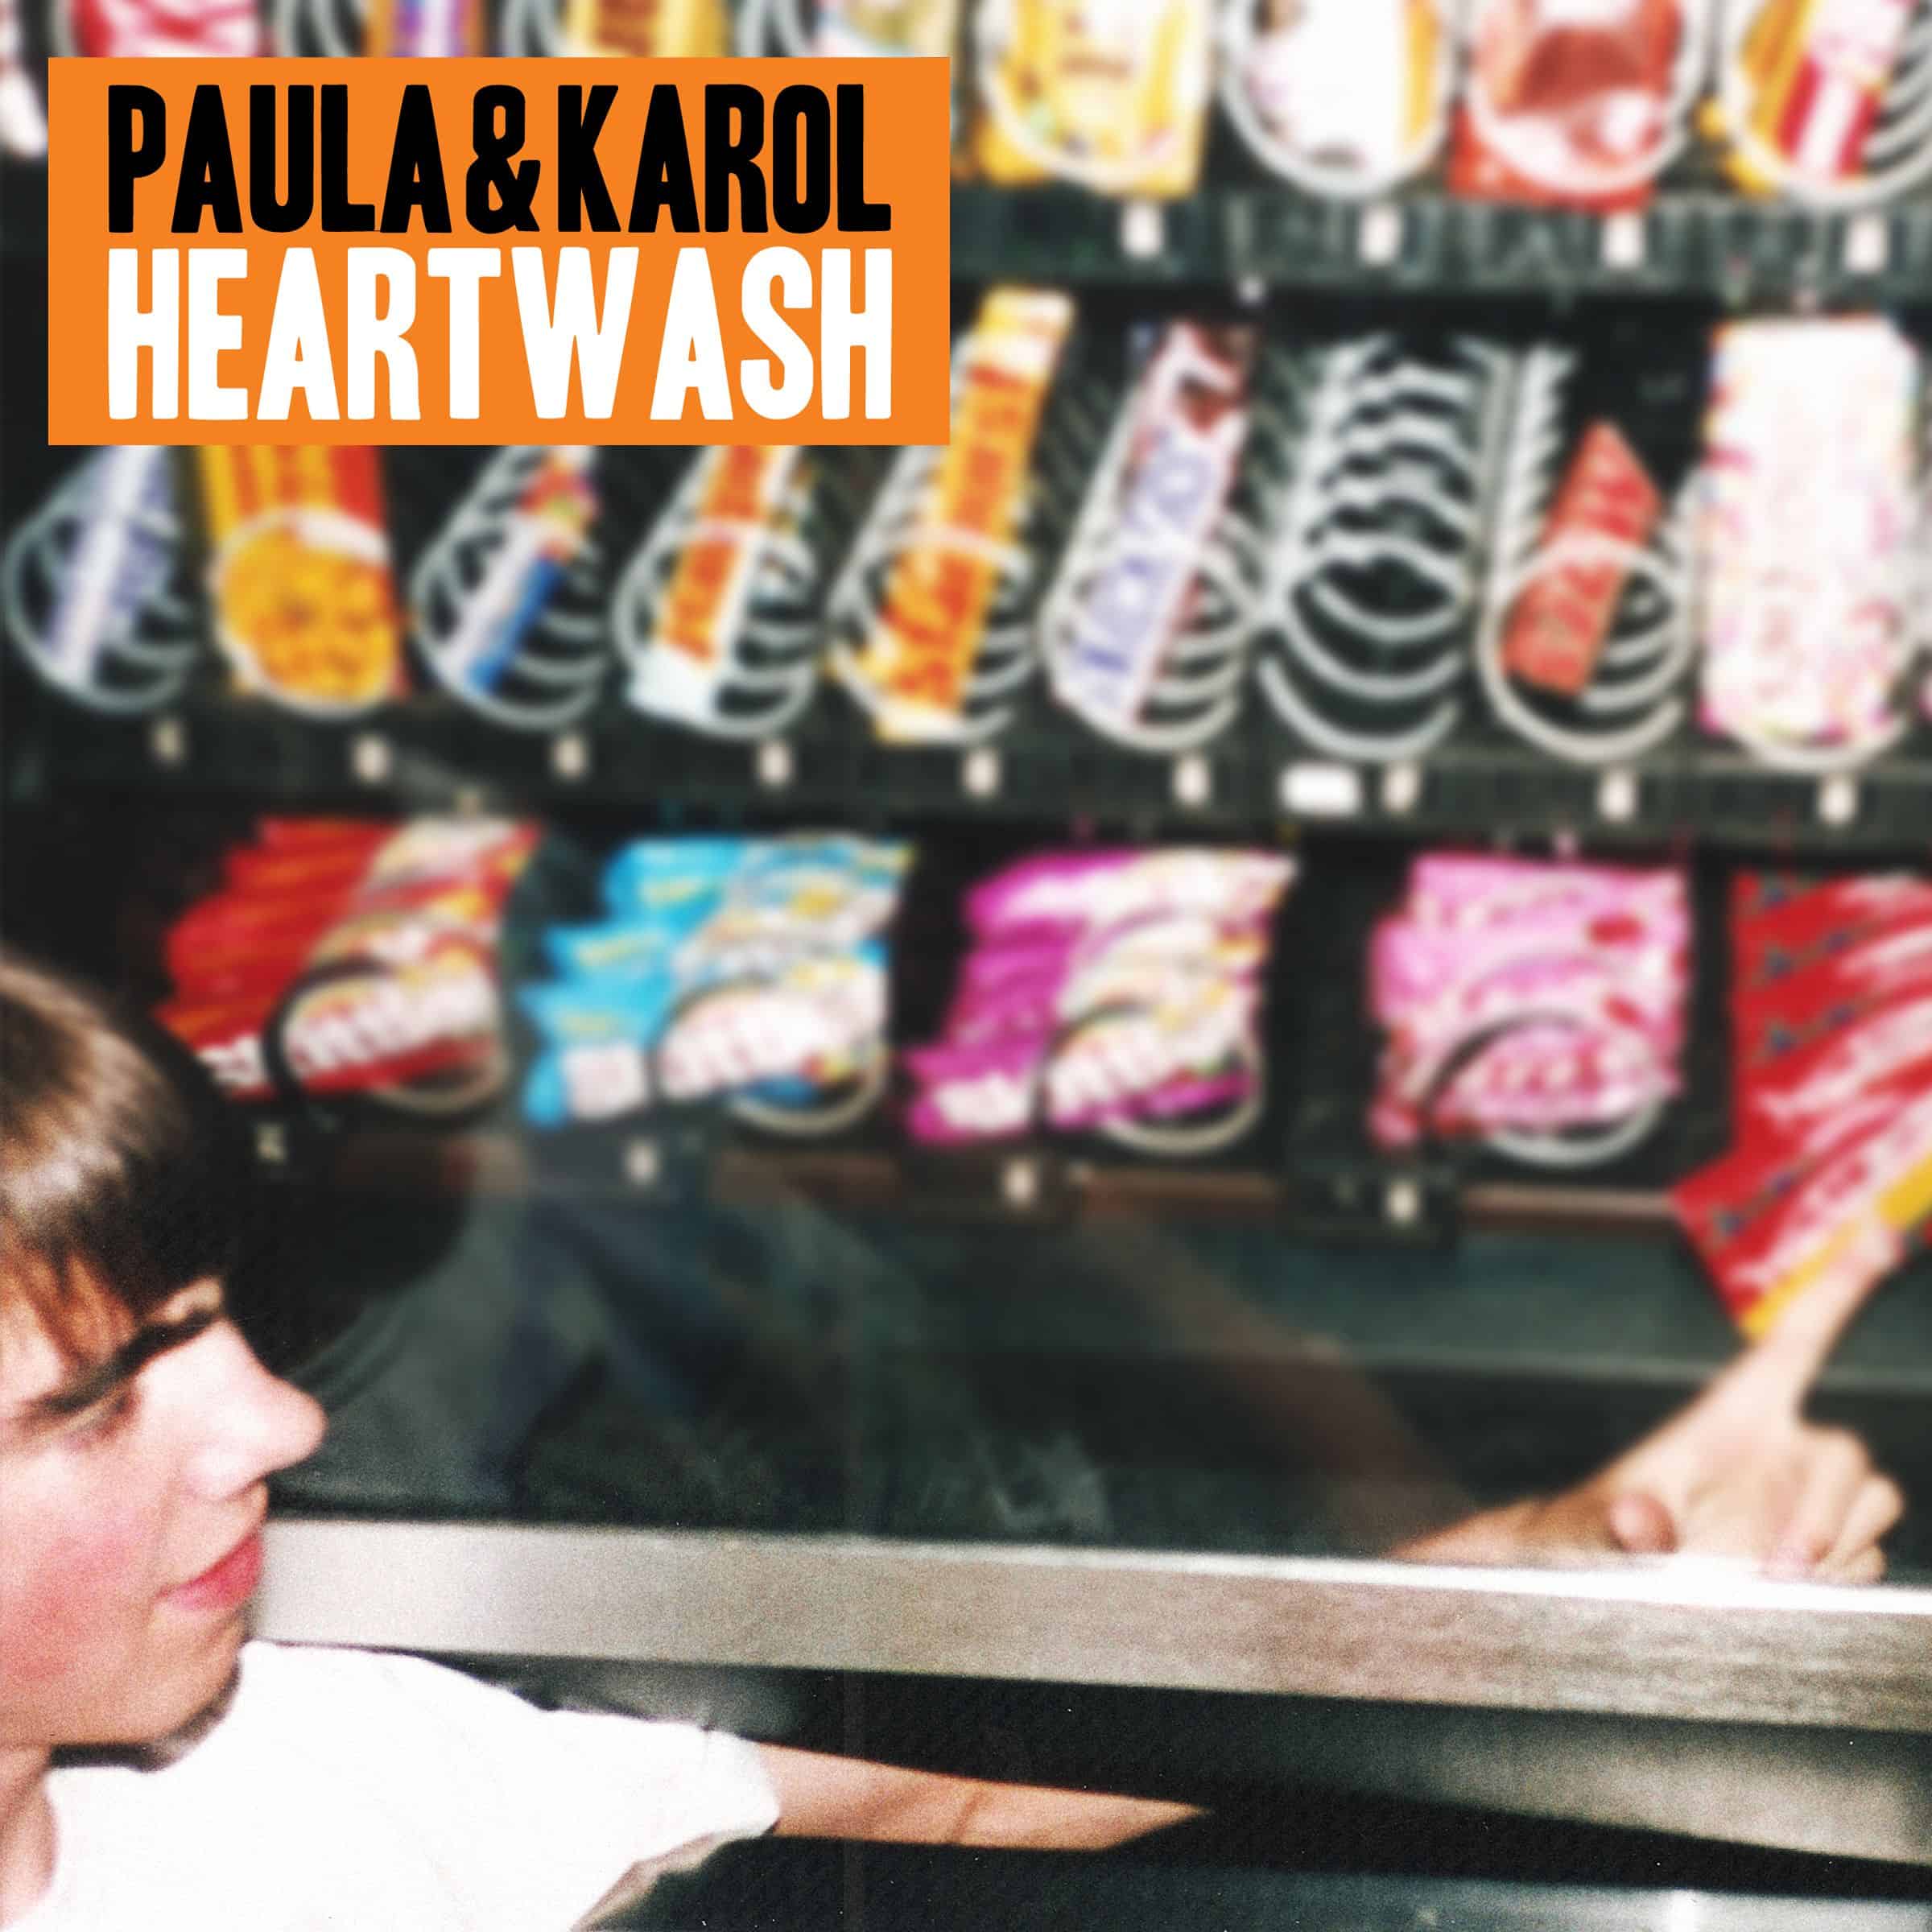 Paula & Karol - Heartwash tour!